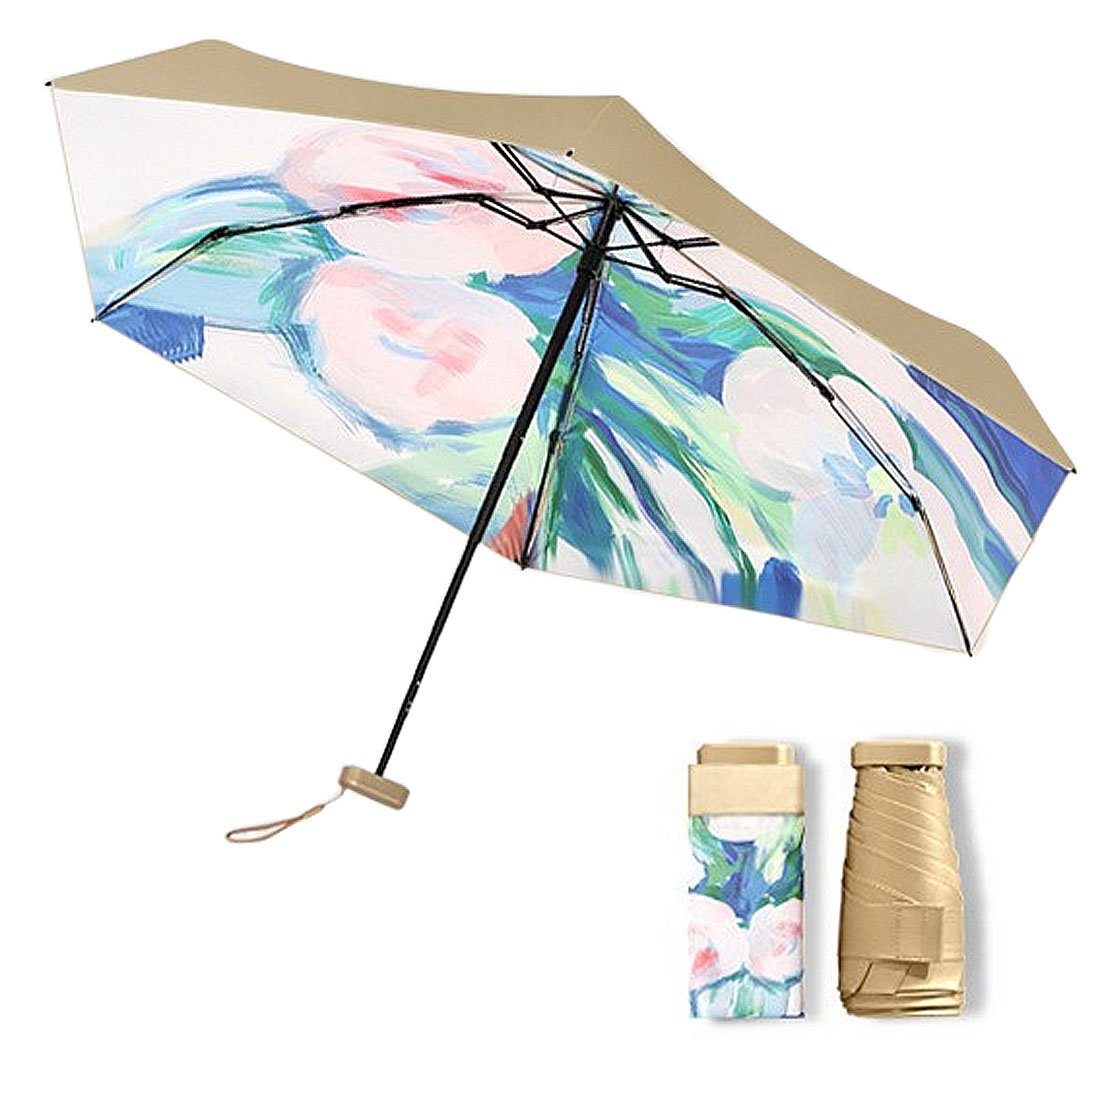 UV-Ölmalerei winddicht Regenschirm, tragbarer Taschenregenschirm DÖRÖY regenfest, Klappschirm,